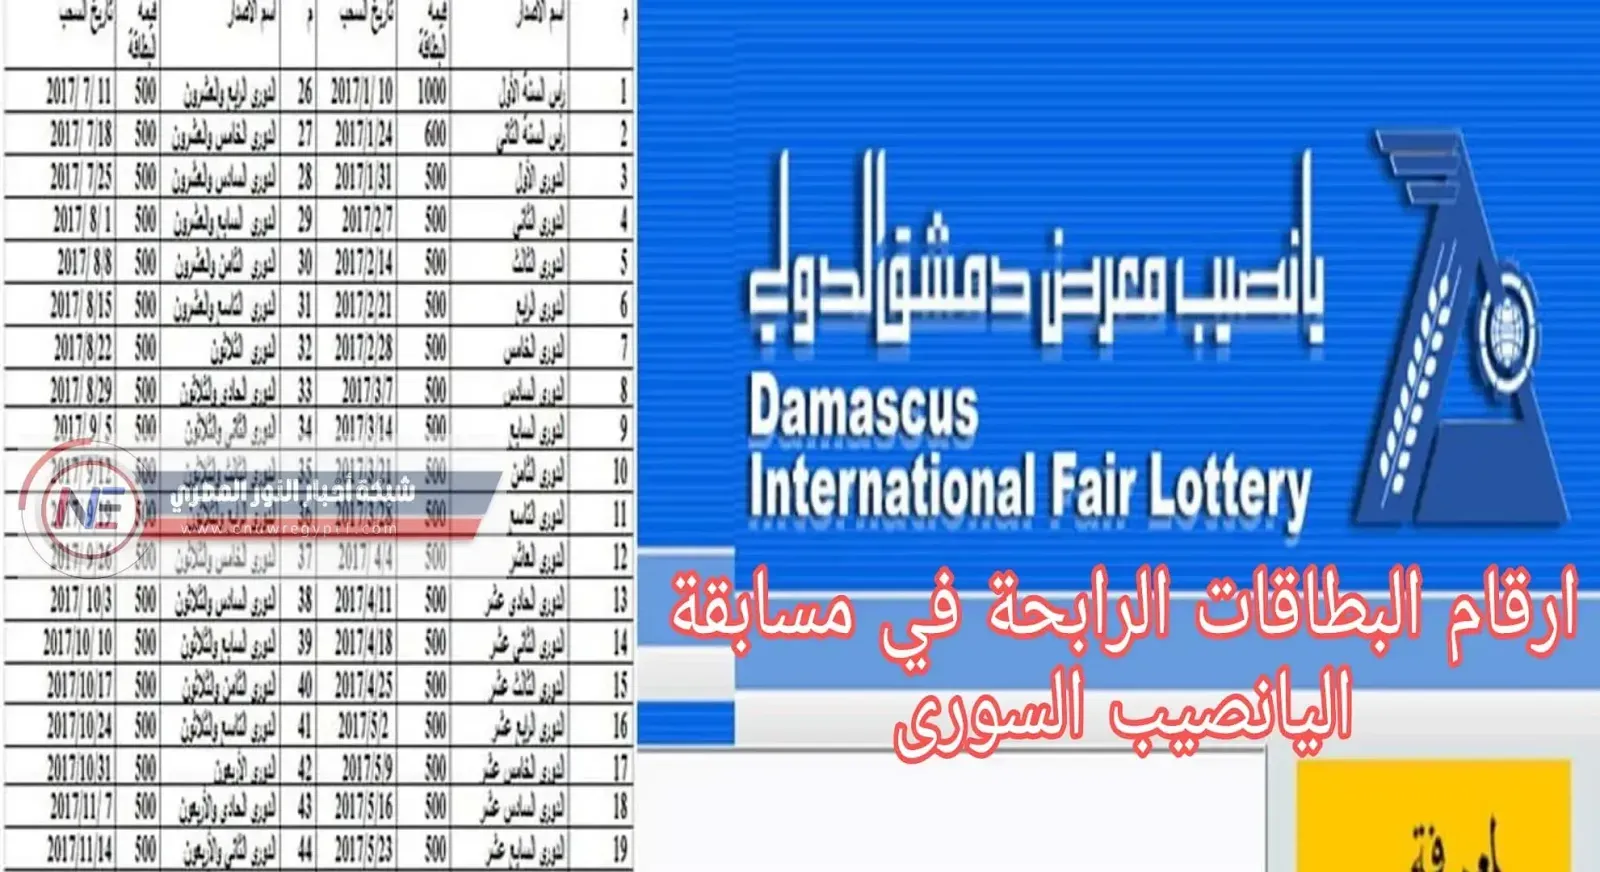 صدرت الان .. نتائج سحب يانصيب معرض دمشق الدولي الاصدار الدورى الثاني والأربعين رقم 45 بتاريخ اليوم 22 تشرين الثاني 2022